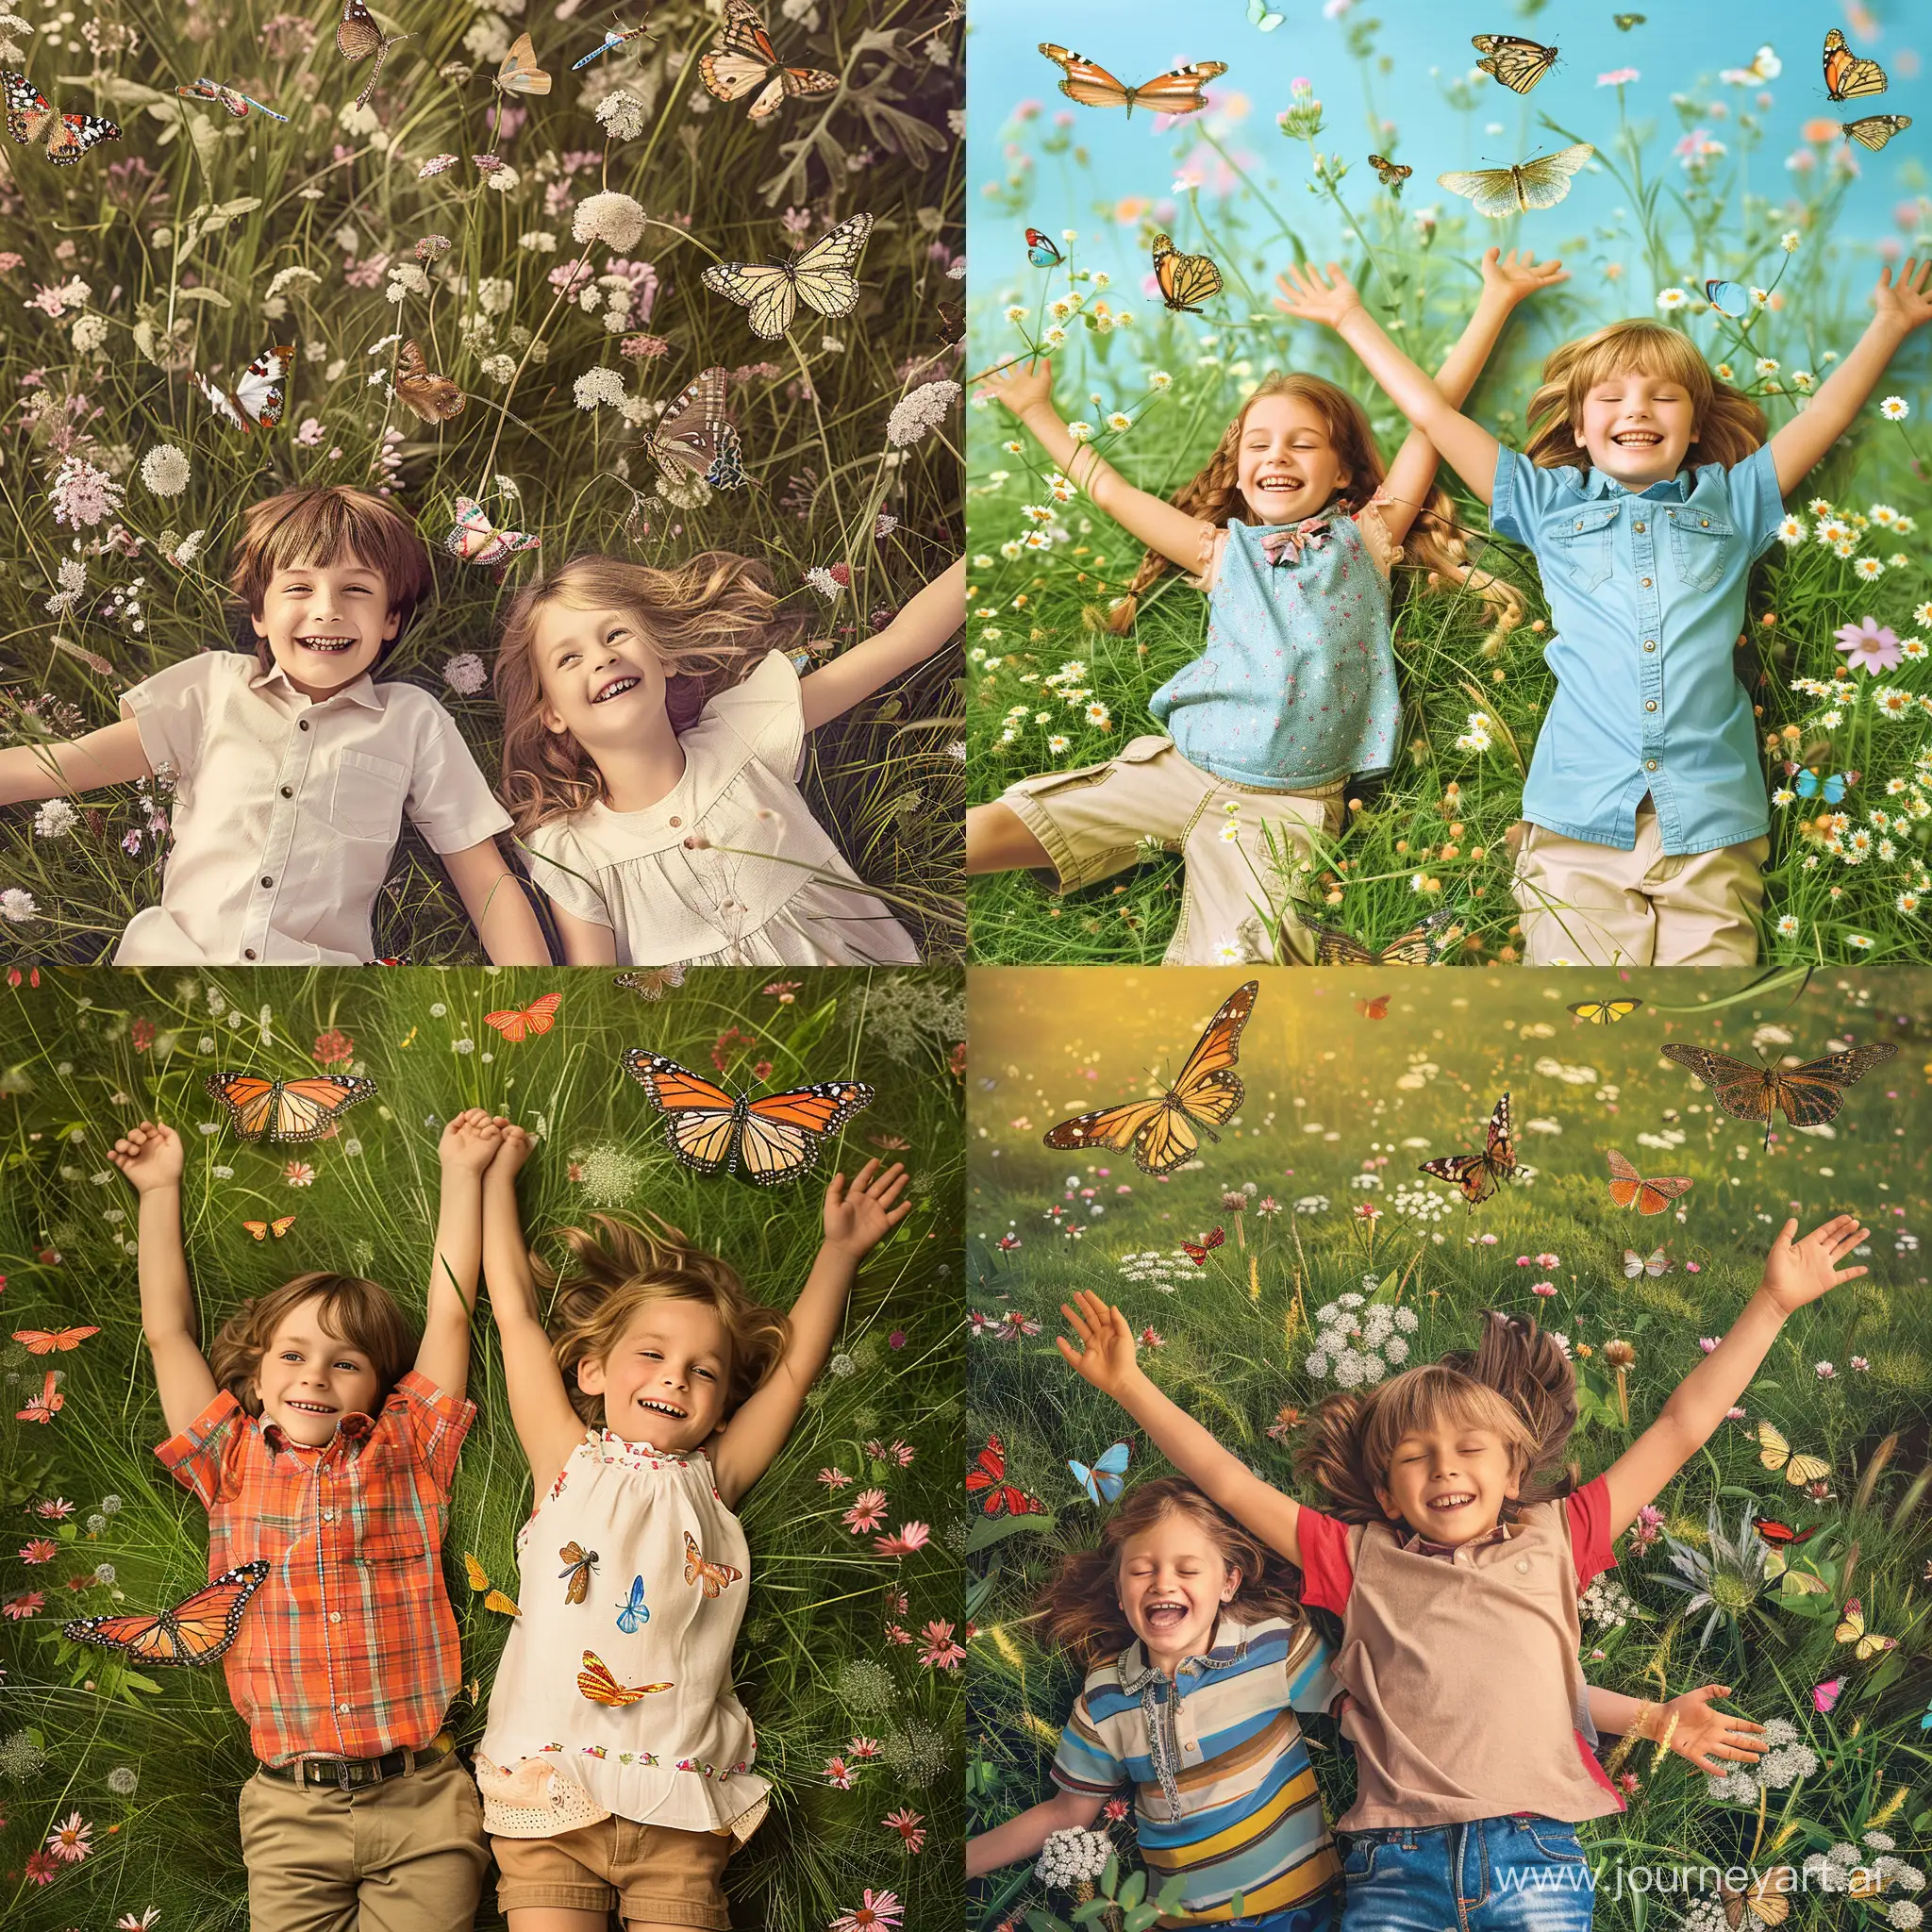 Радостные, смеющиеся мальчик и девочка, лежат, раскинув руки в стороны, в траве на цветущем летнем лугу, вокруг летают бабочки и стрекозы, фотография, гиперреализм, высокое разрешение